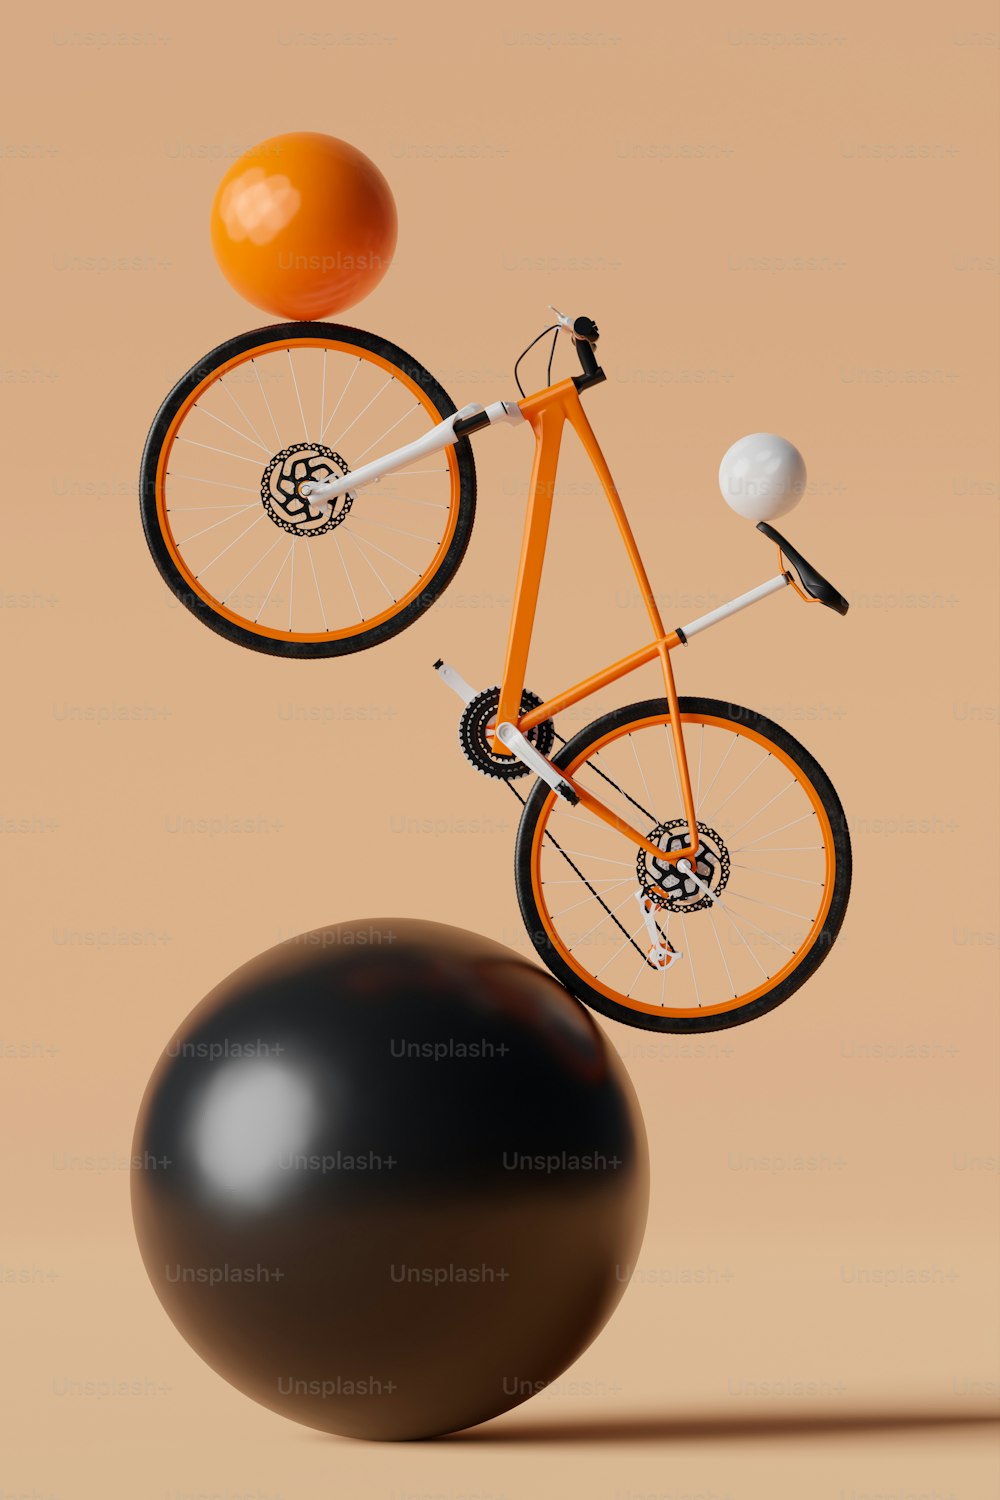 Ein orangefarbenes Fahrrad, das auf einem schwarzen Ball balanciert